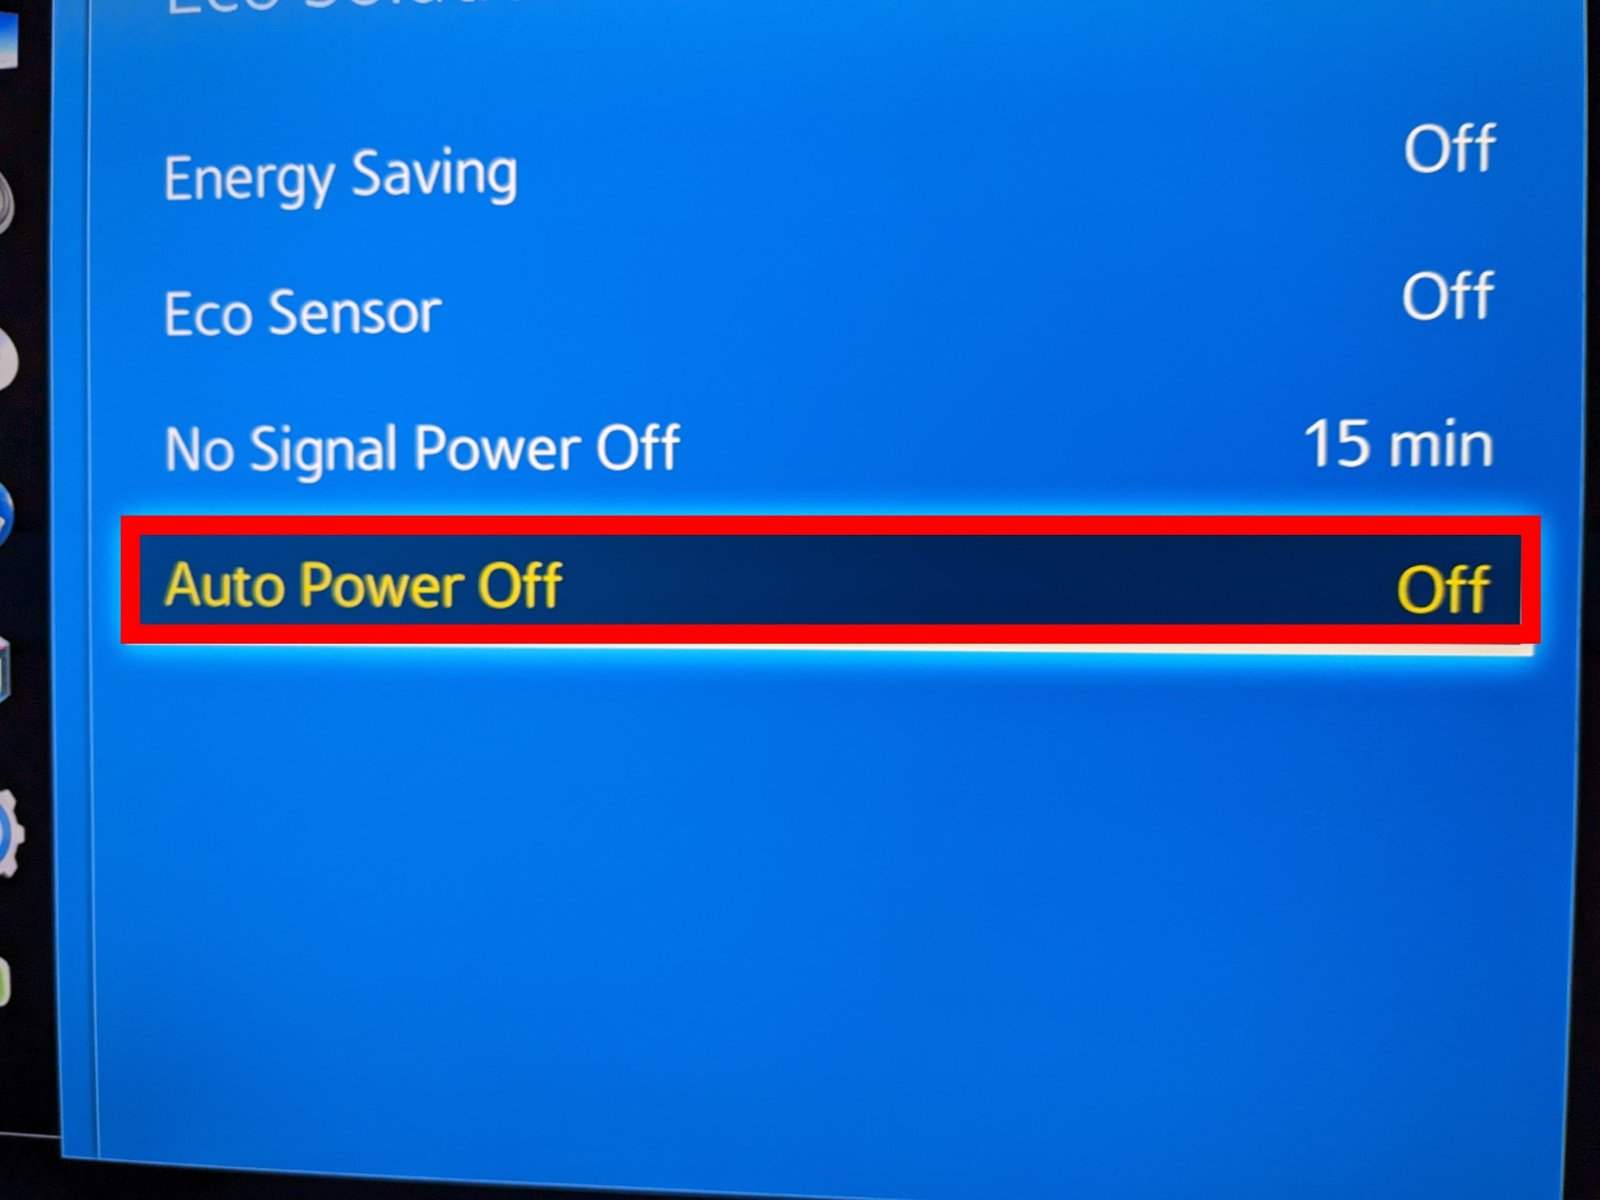 Auto Power Off on Samsung smart TV 